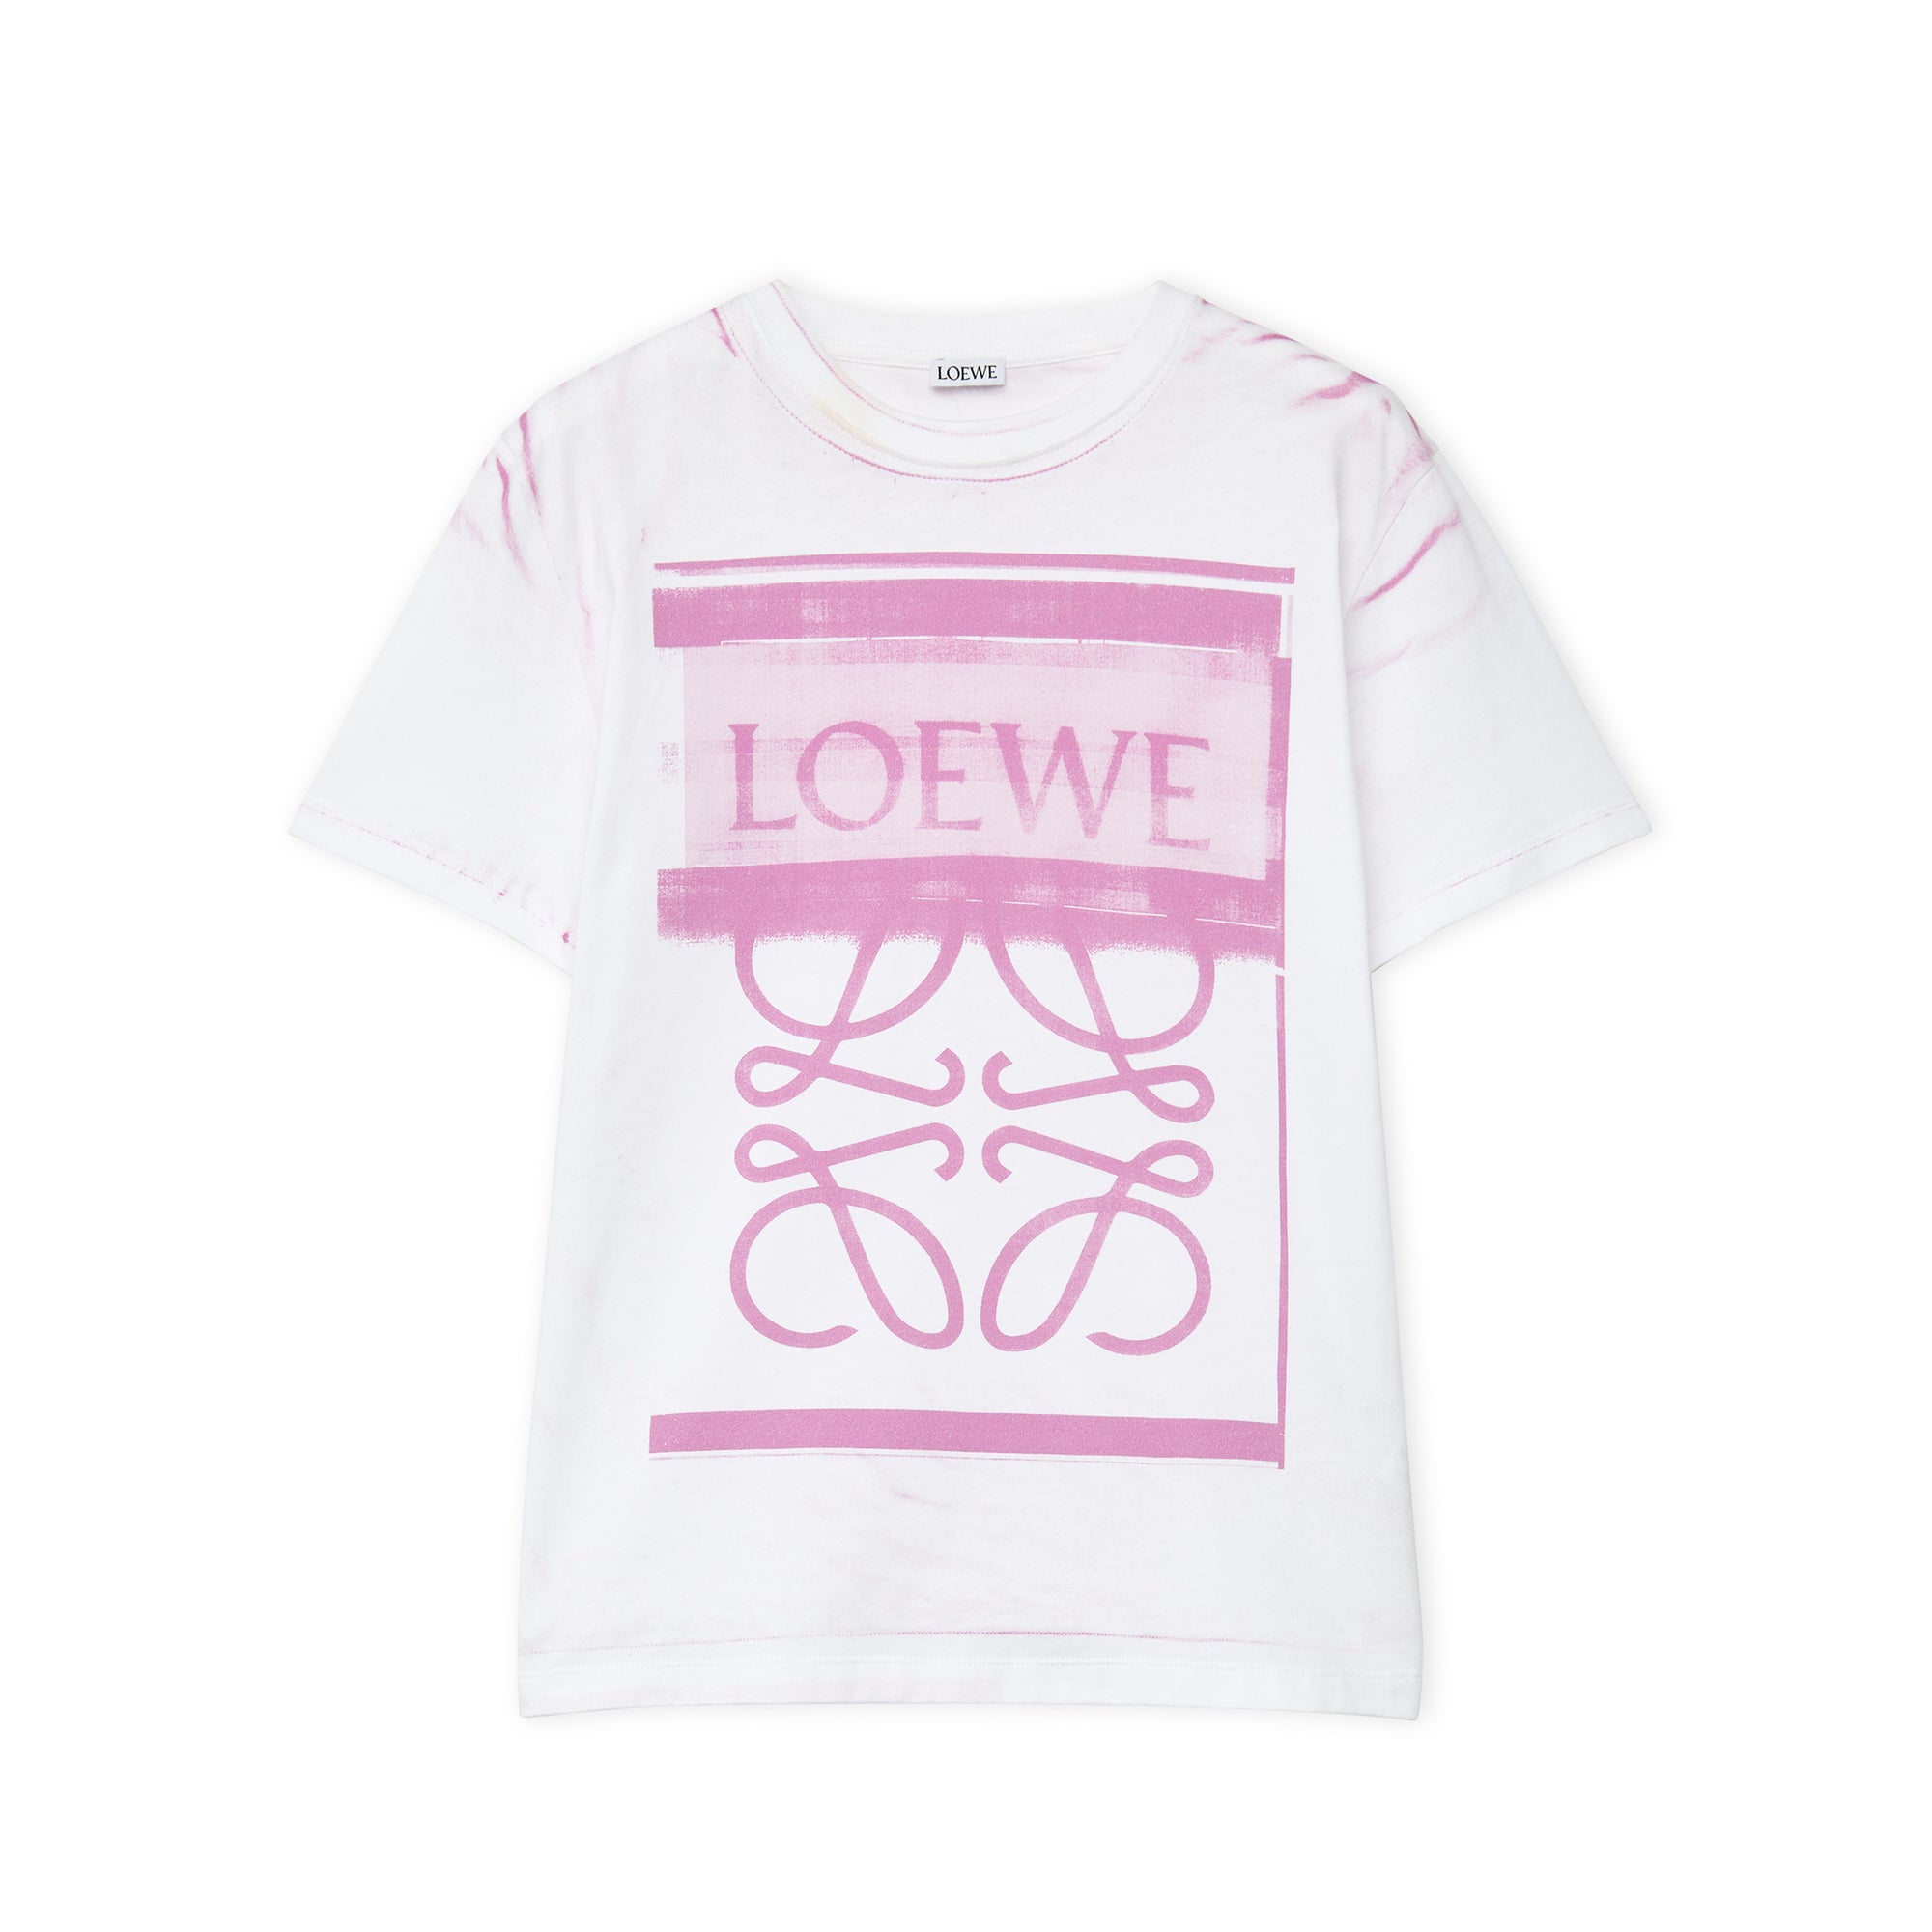 Loewe - Women’s Regular Fit T-Shirt - (White/Pink) view 1